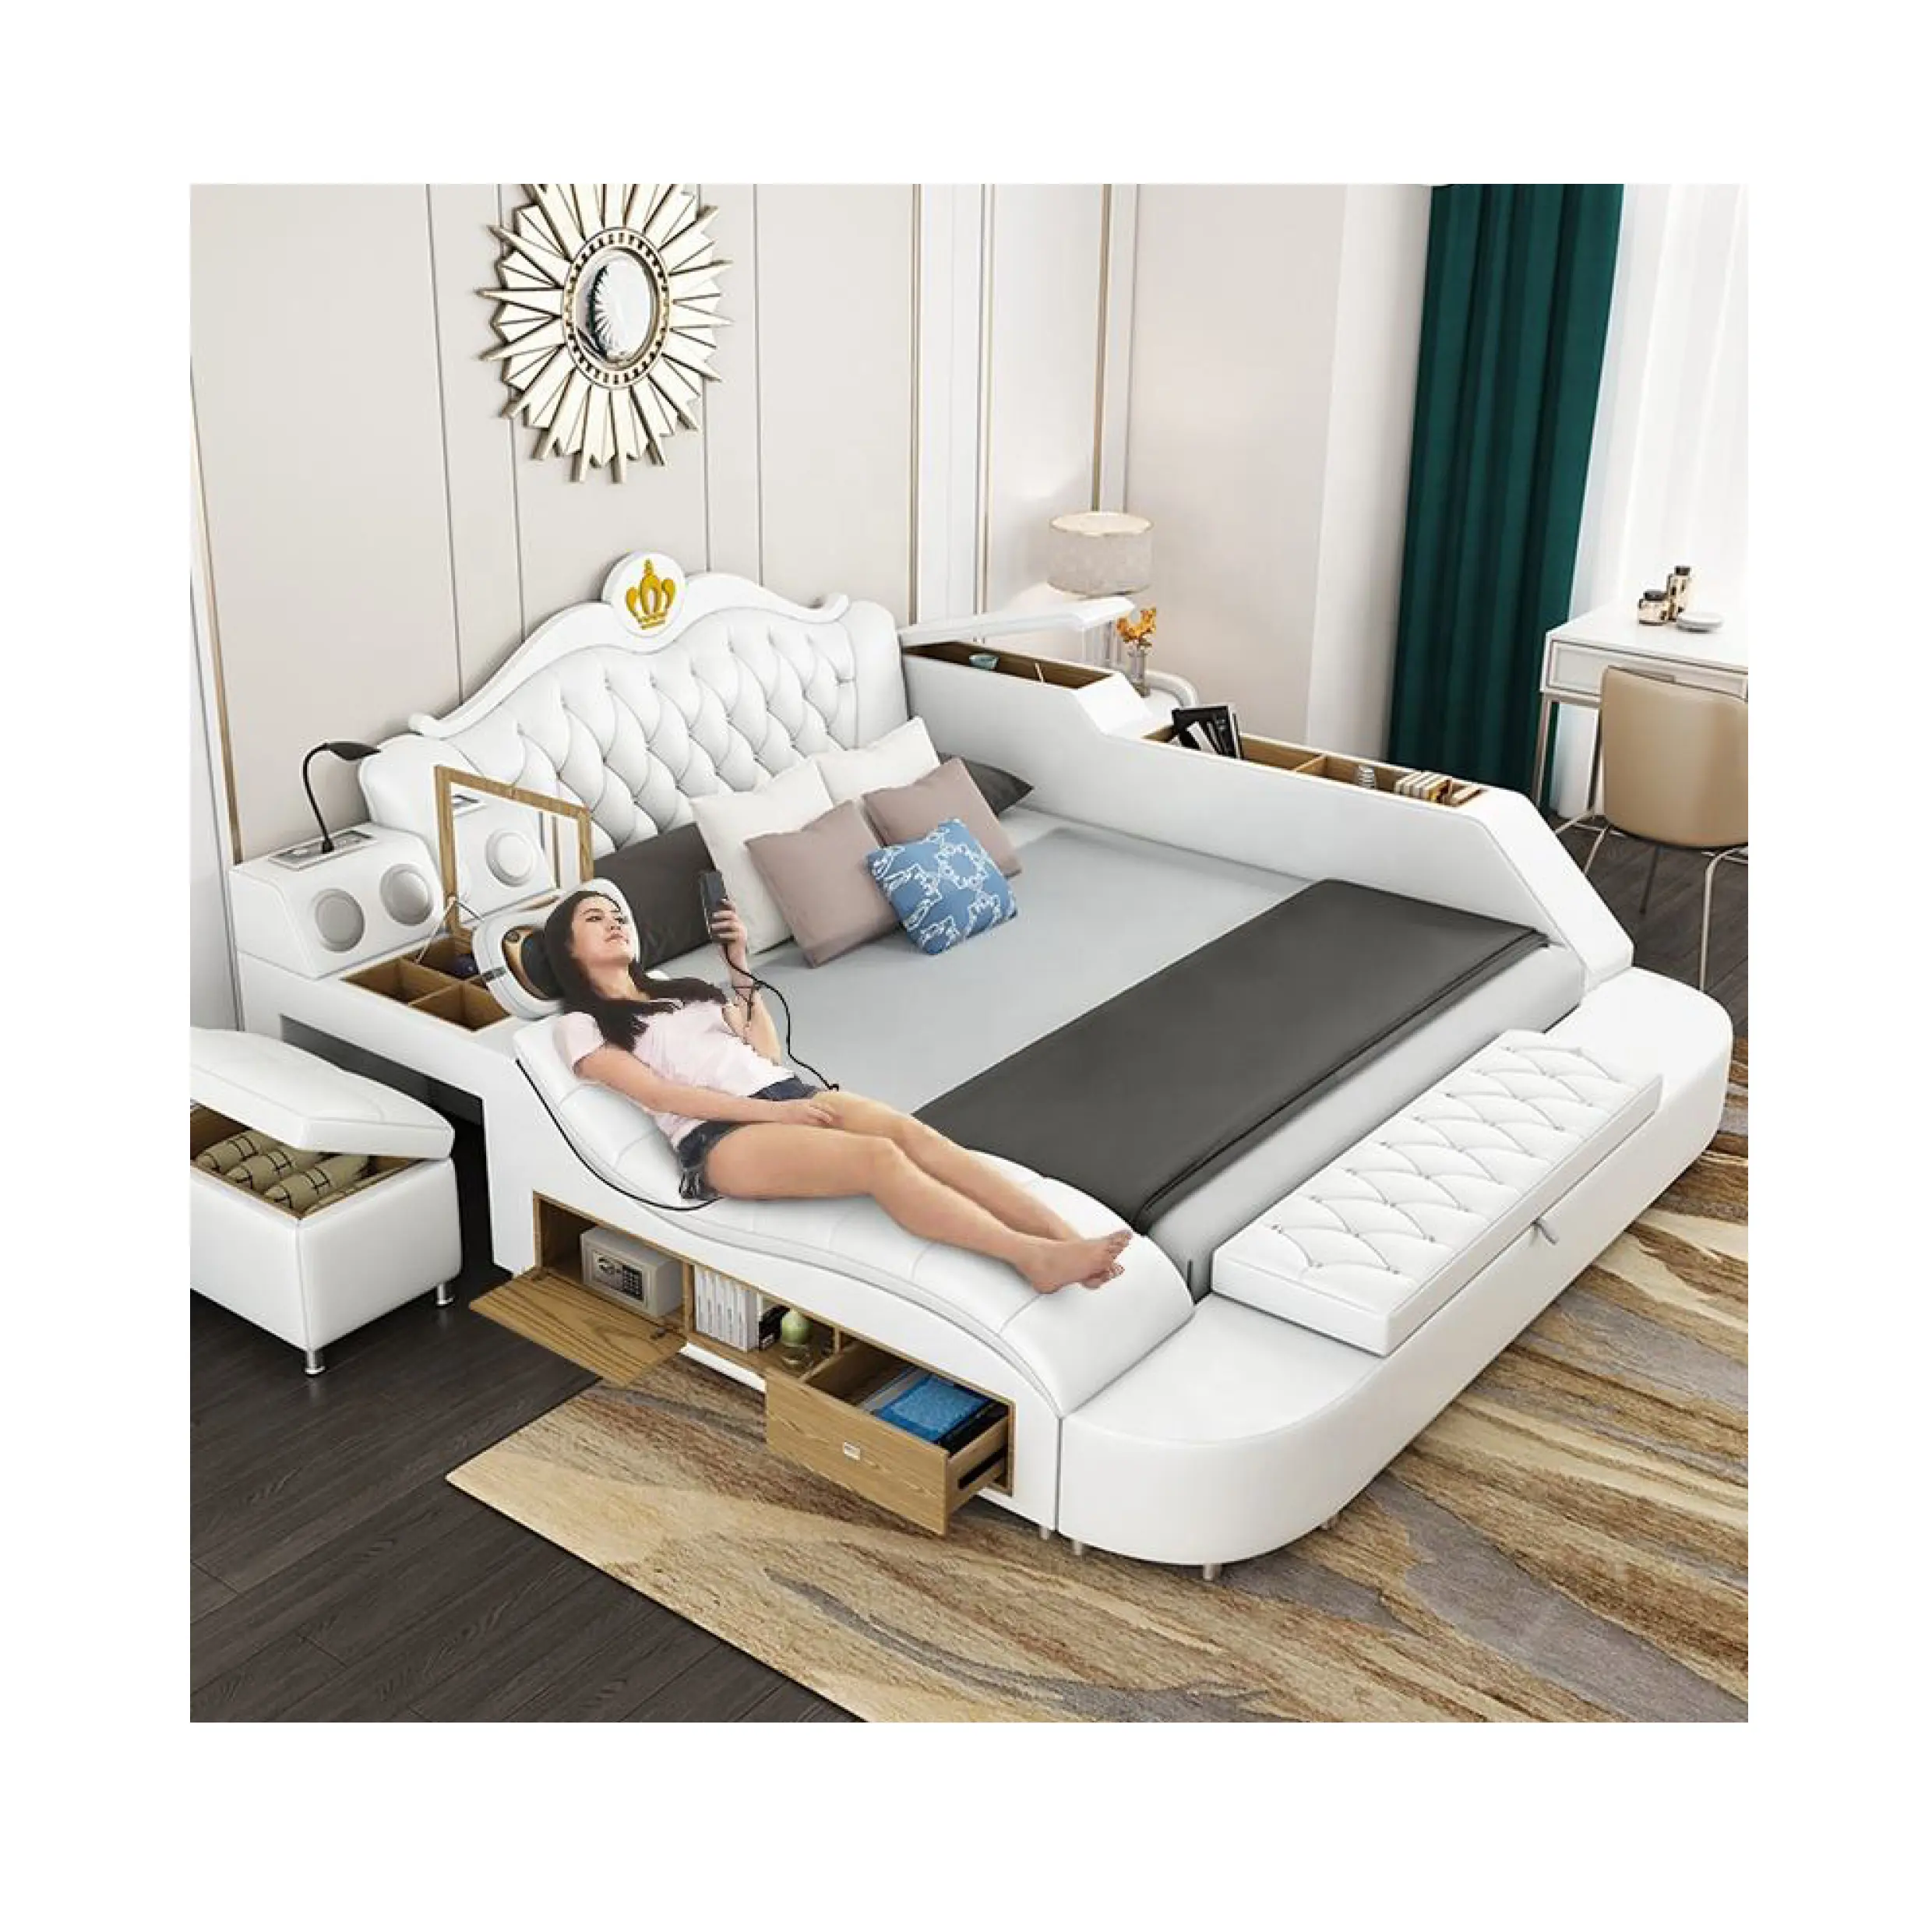 الجلود السرير الحديثة ستايل لل نوم الأثاث متعددة الوظائف جلد أبيض مع تخزين سرير تدليك كهربي